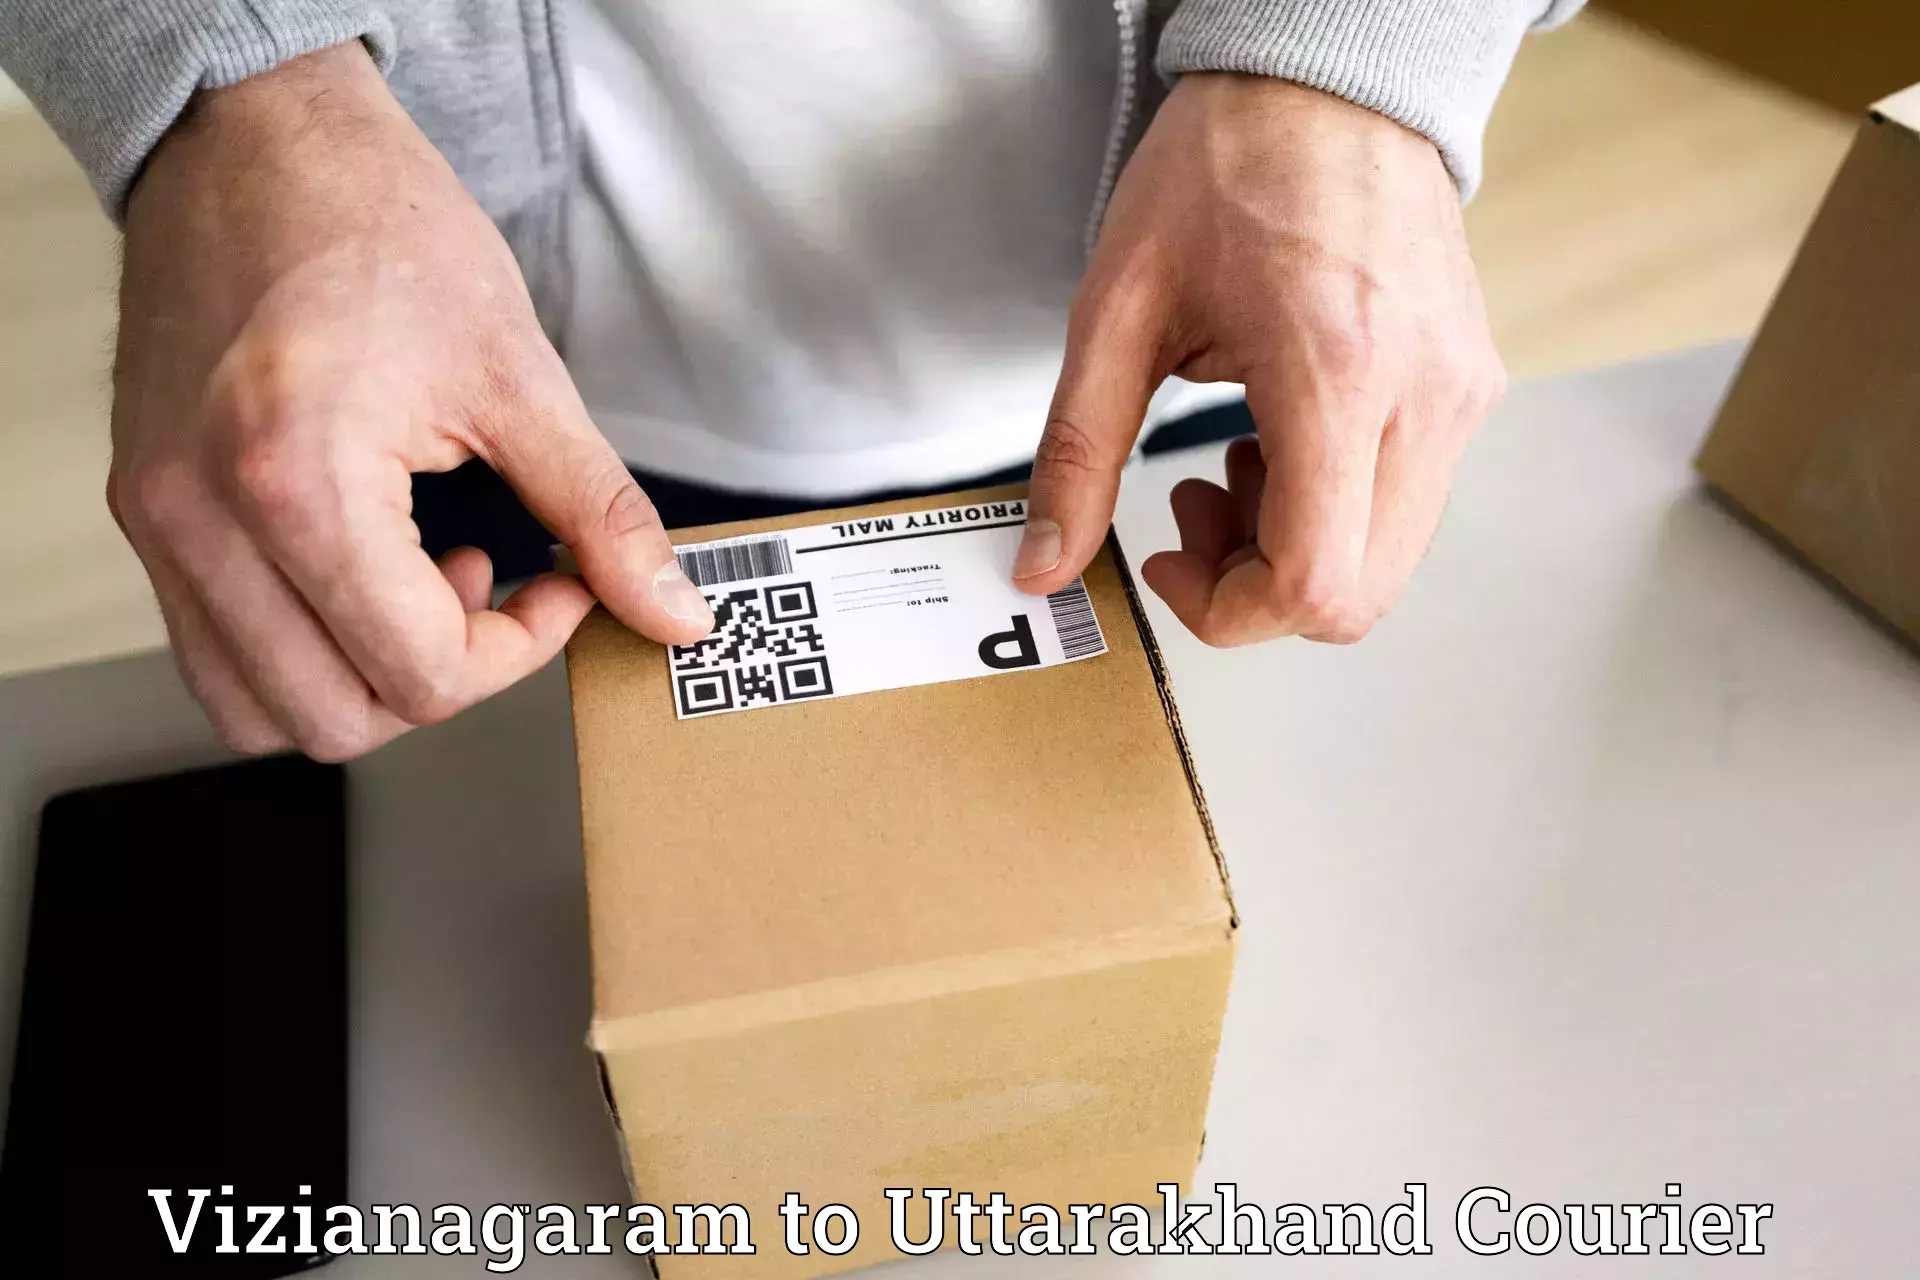 Efficient courier operations Vizianagaram to Almora